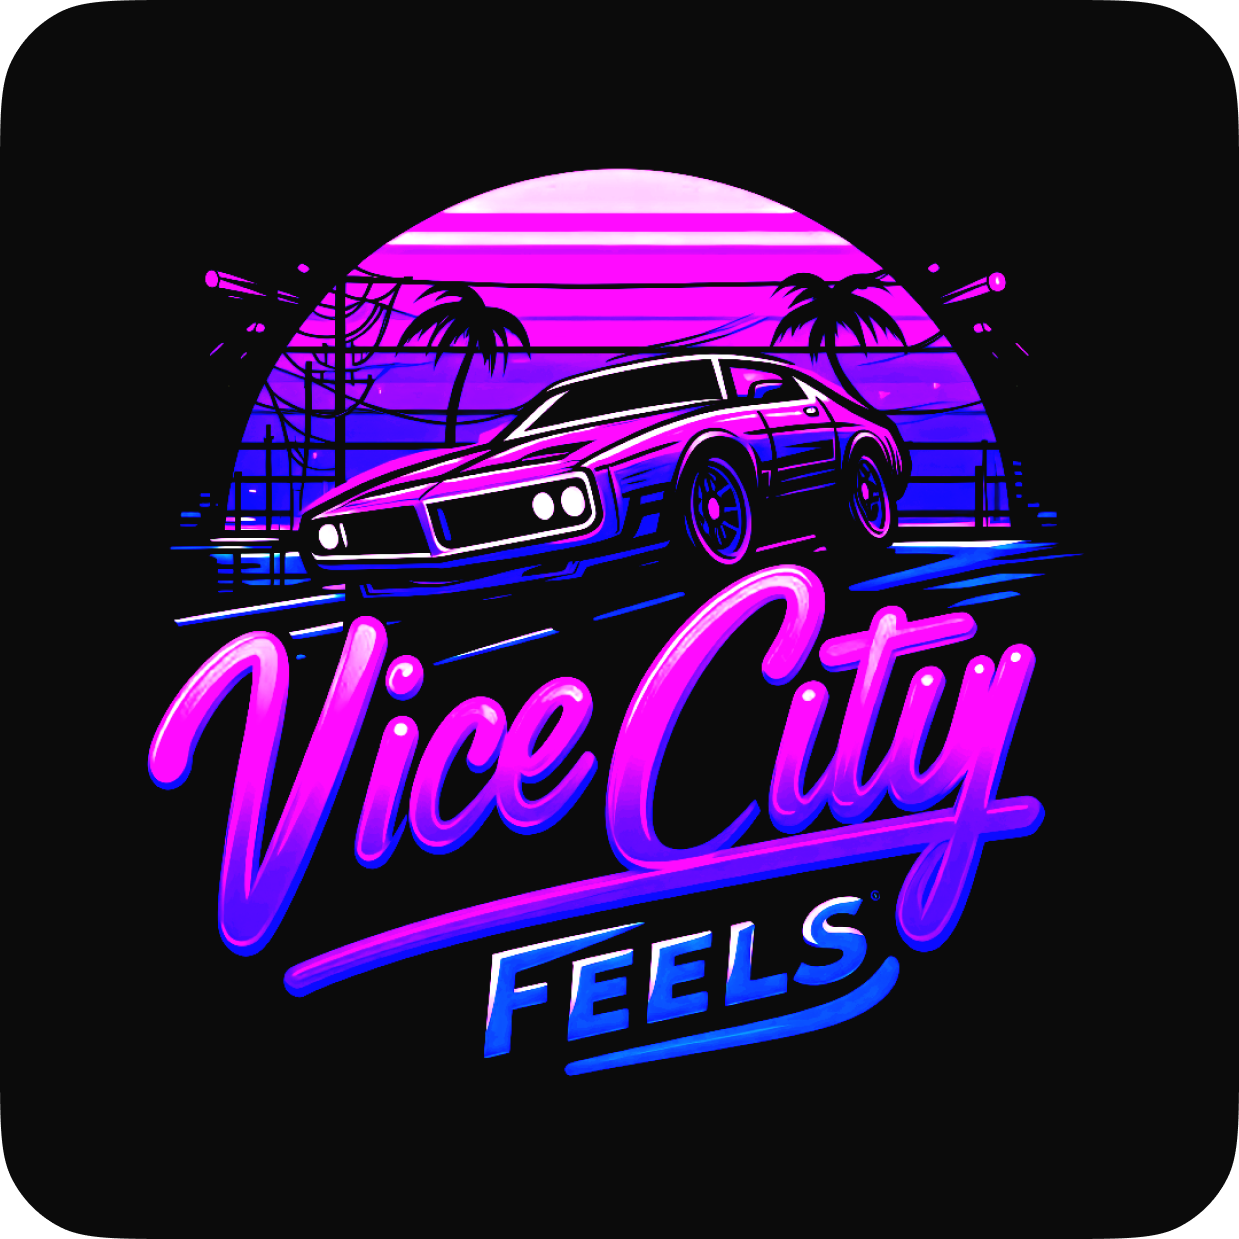 Vice City Feels ★